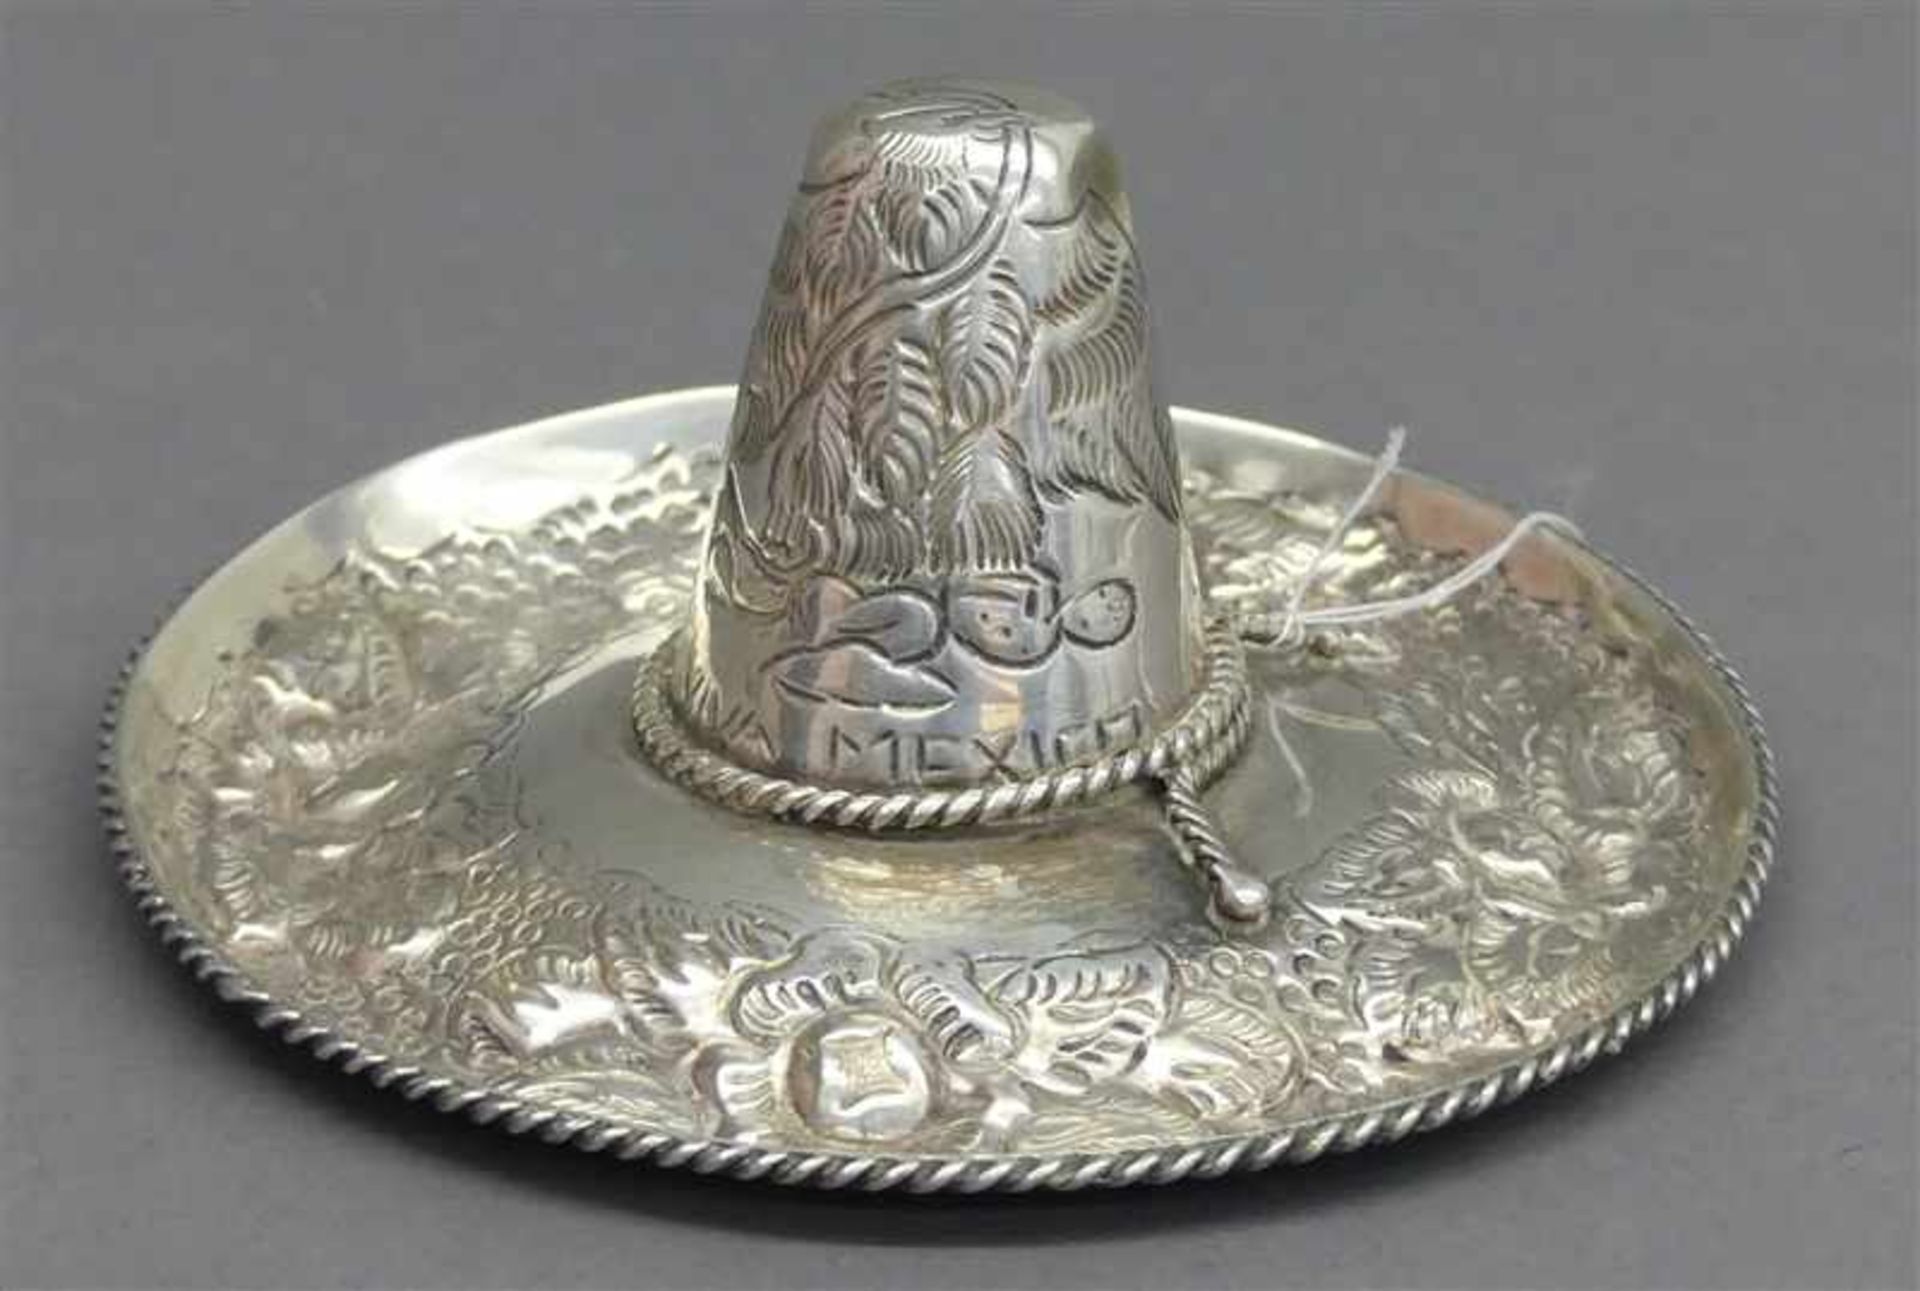 Sombrero Silber, 925, reicher Reliefdekor, Mexiko, 20. Jh., 76g, - - -20.00 % buyer's premium on the